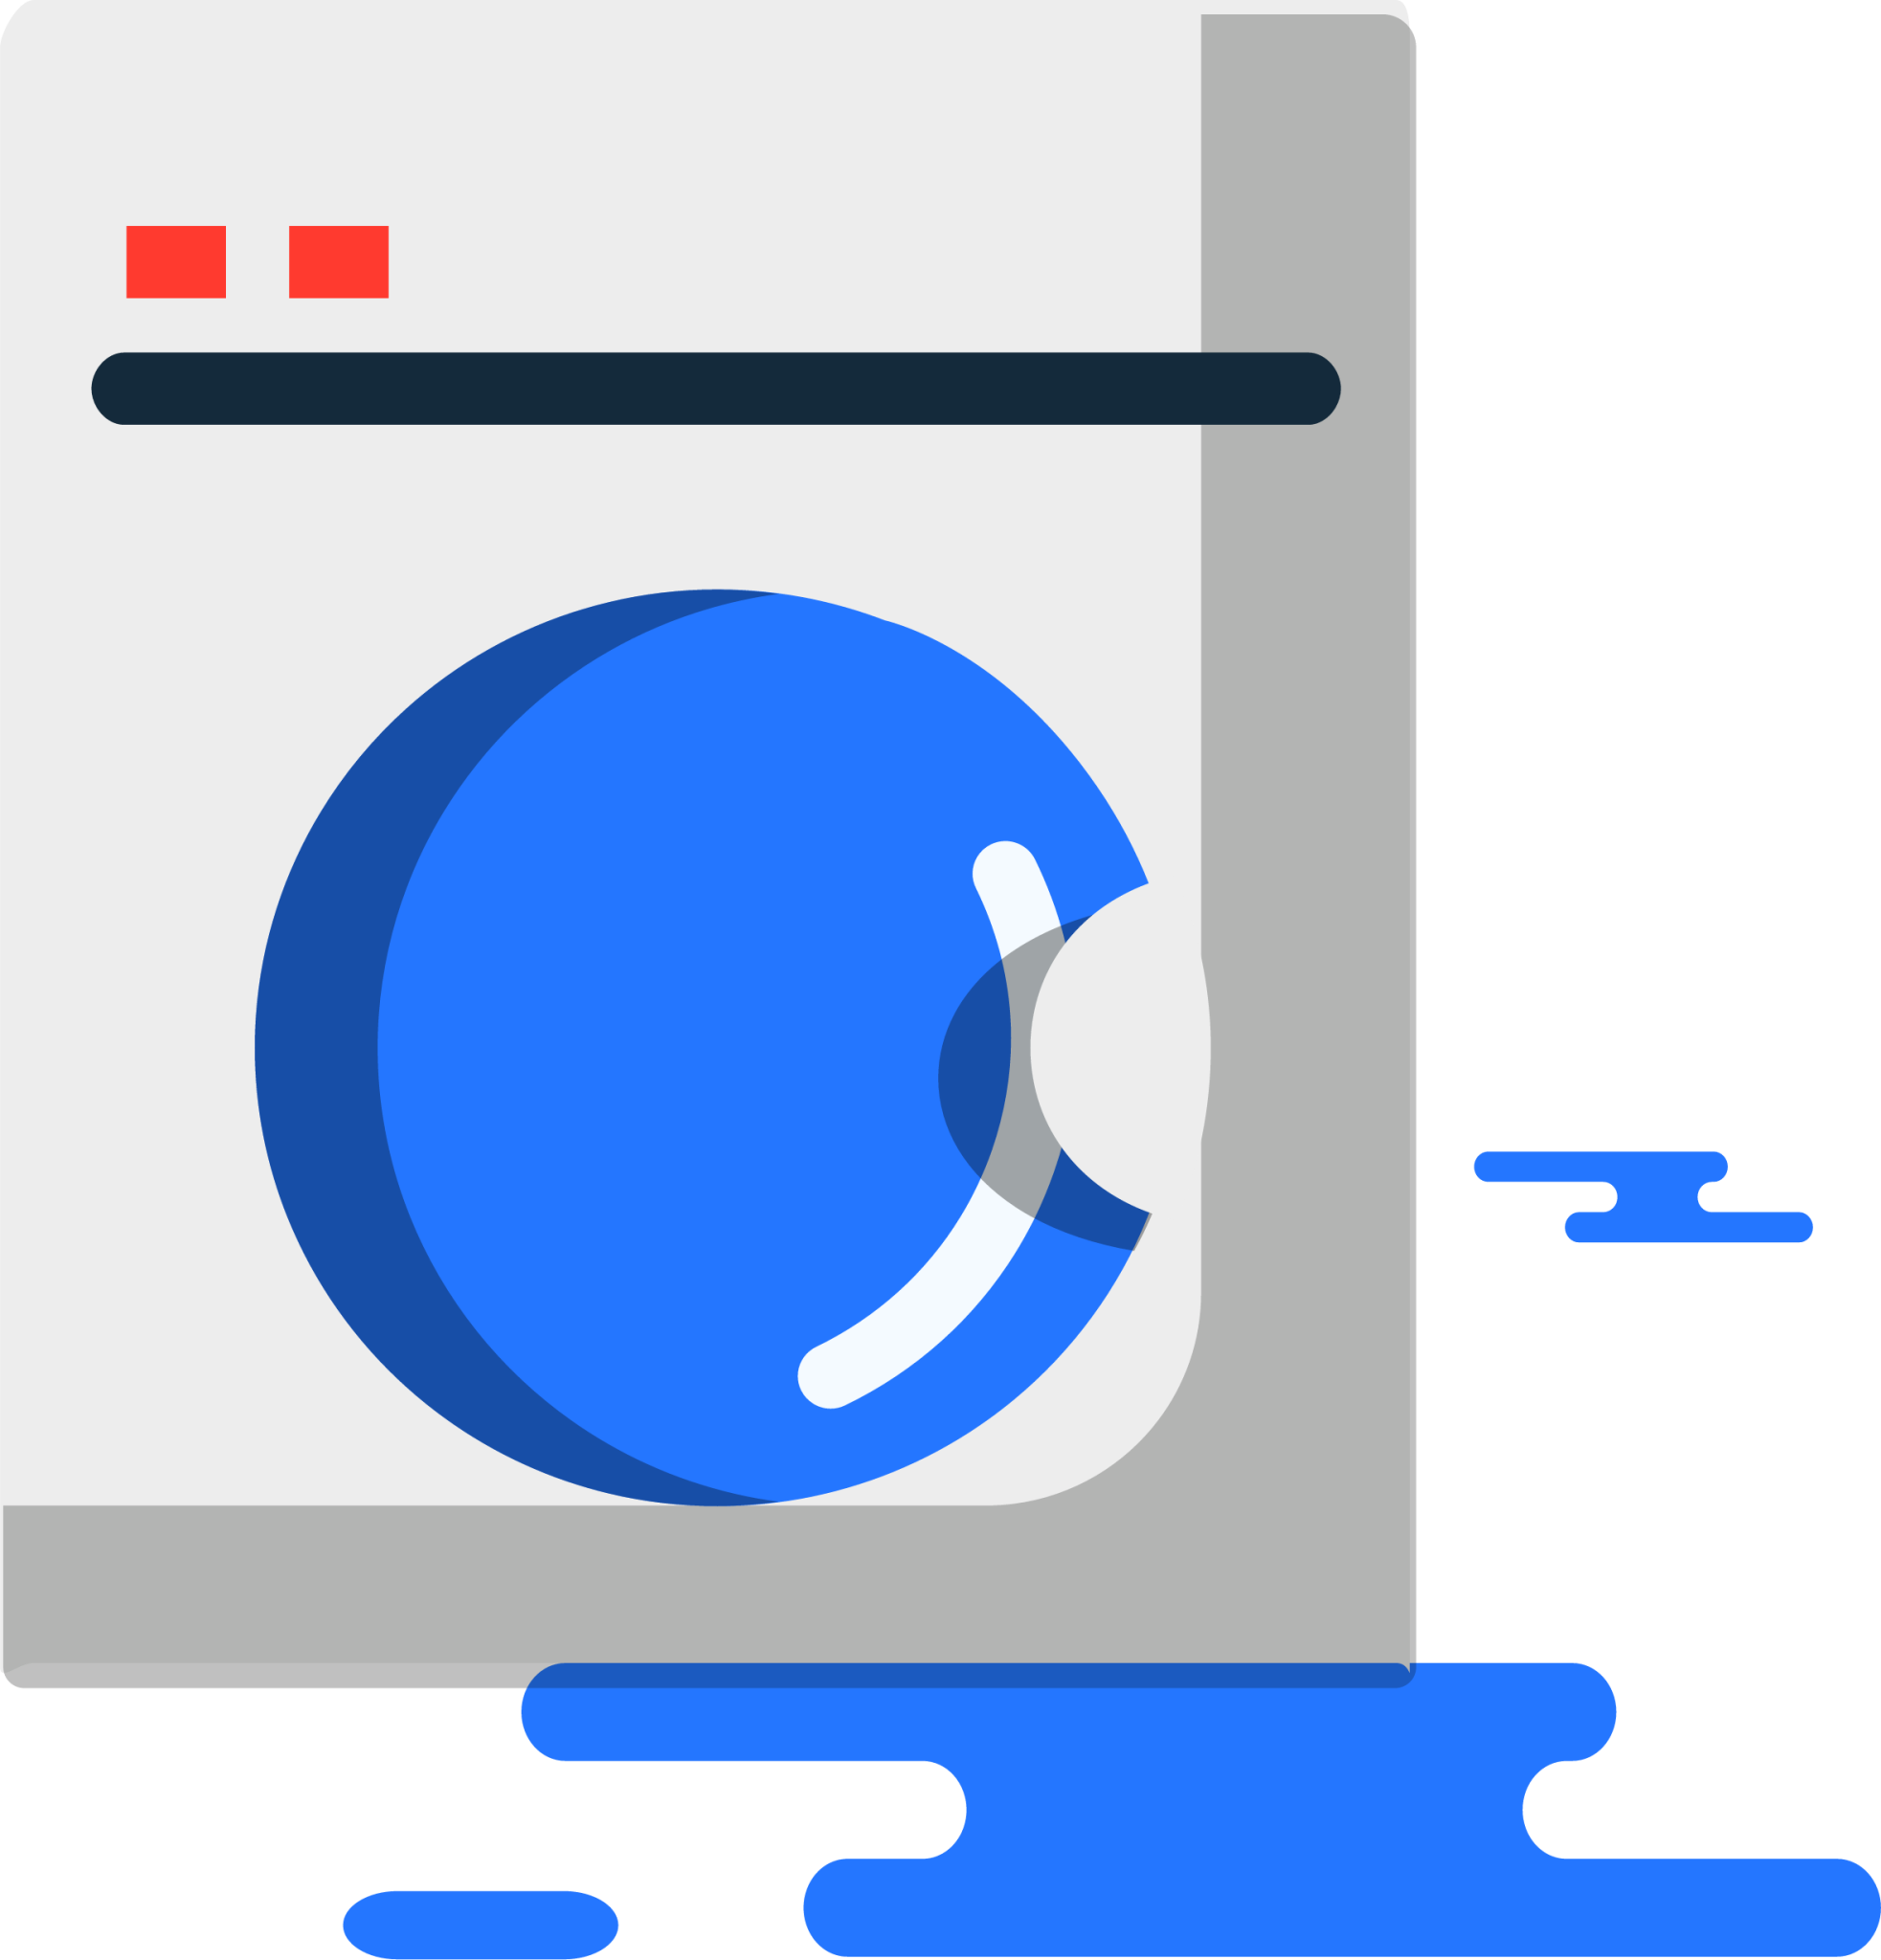 laundry washing machine illustration